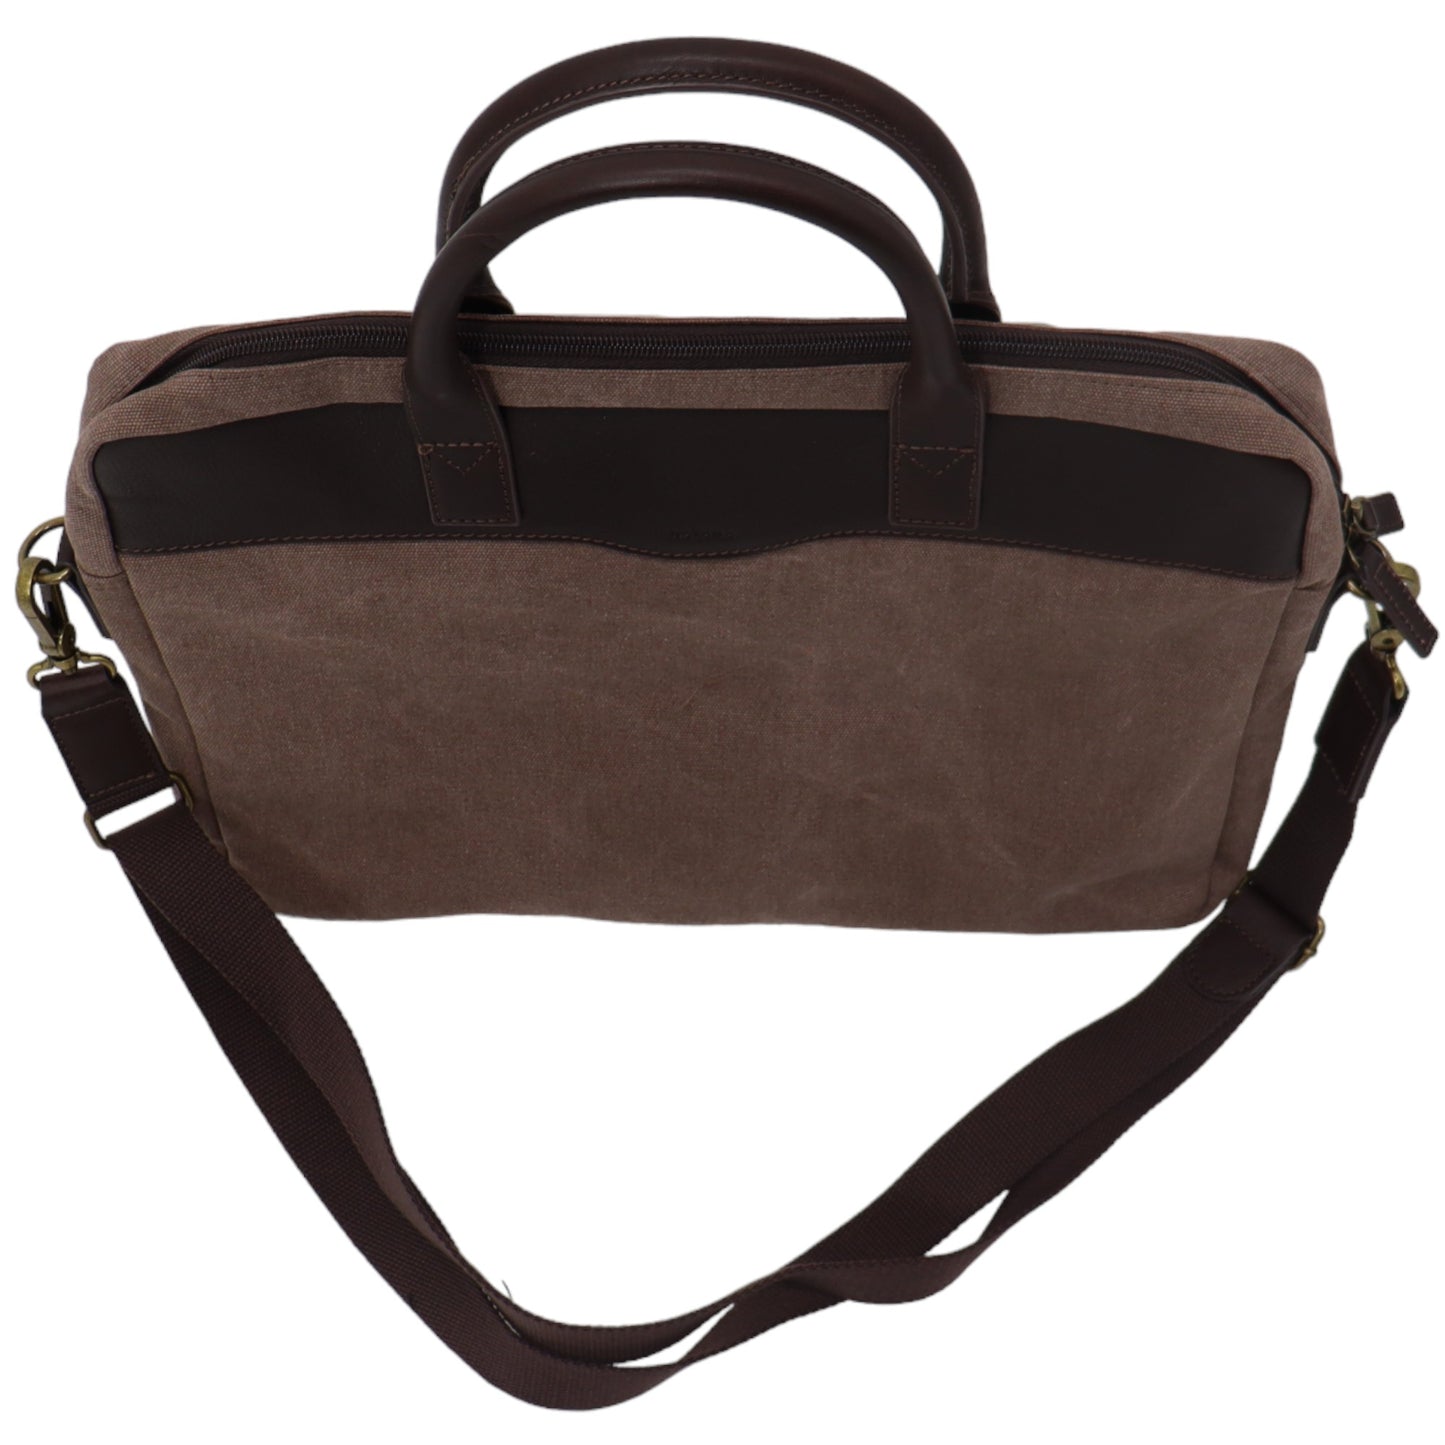 Laptoptasche – PC-Tasche – Stoff – Schultergurt – Safekeepers-Taschen – Beige